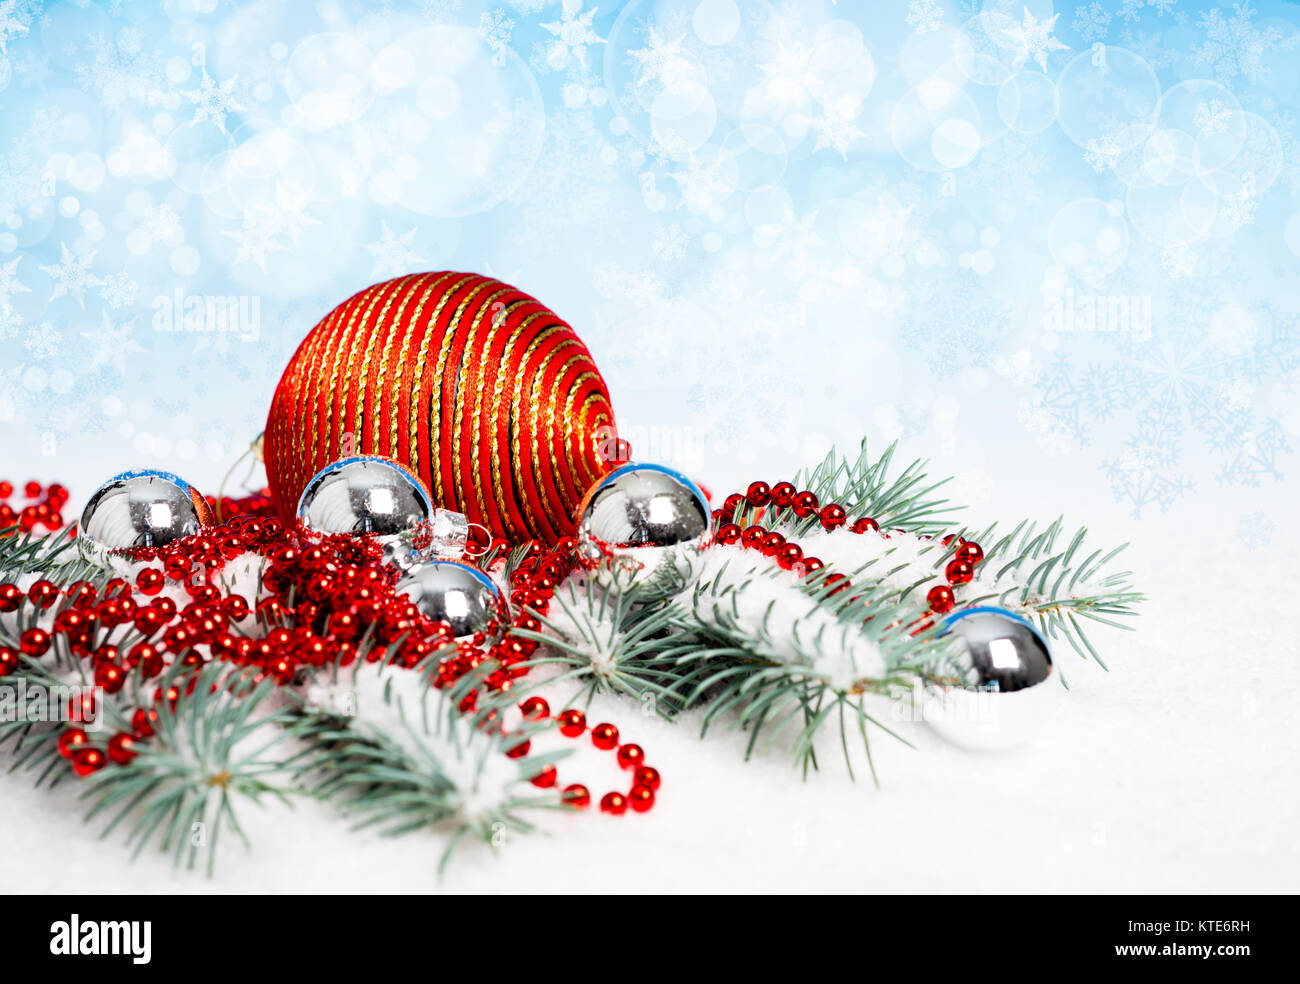 Décorations de Noël rouges sur fond abstrait winted Banque D'Images